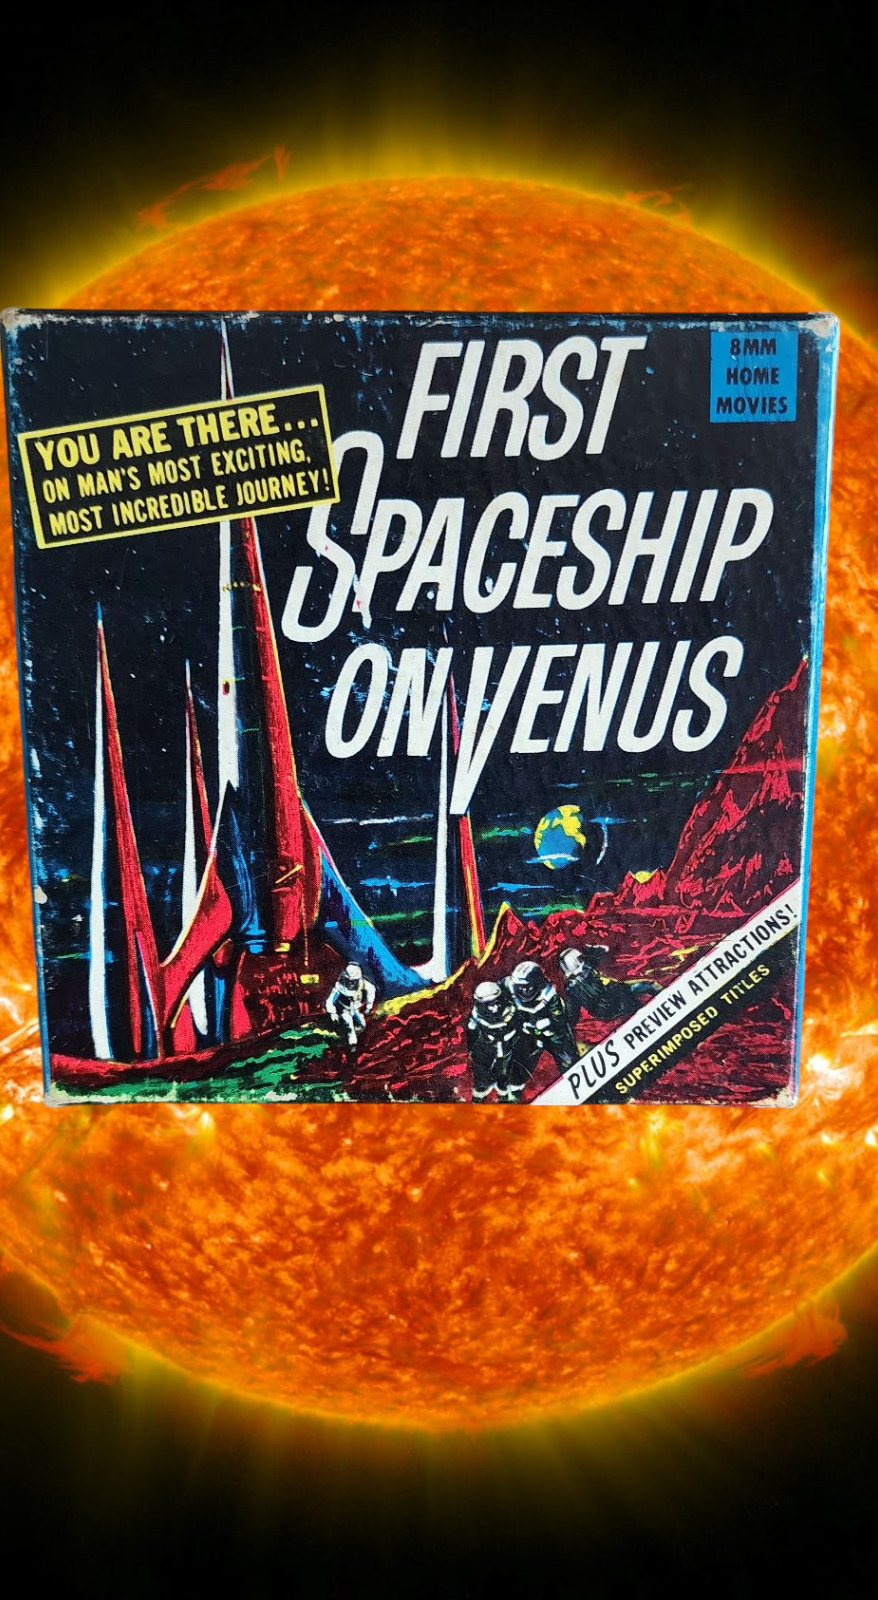 Vintage First Spaceship On Venus 8mm Film Reel In Box Great Graphics See Pic